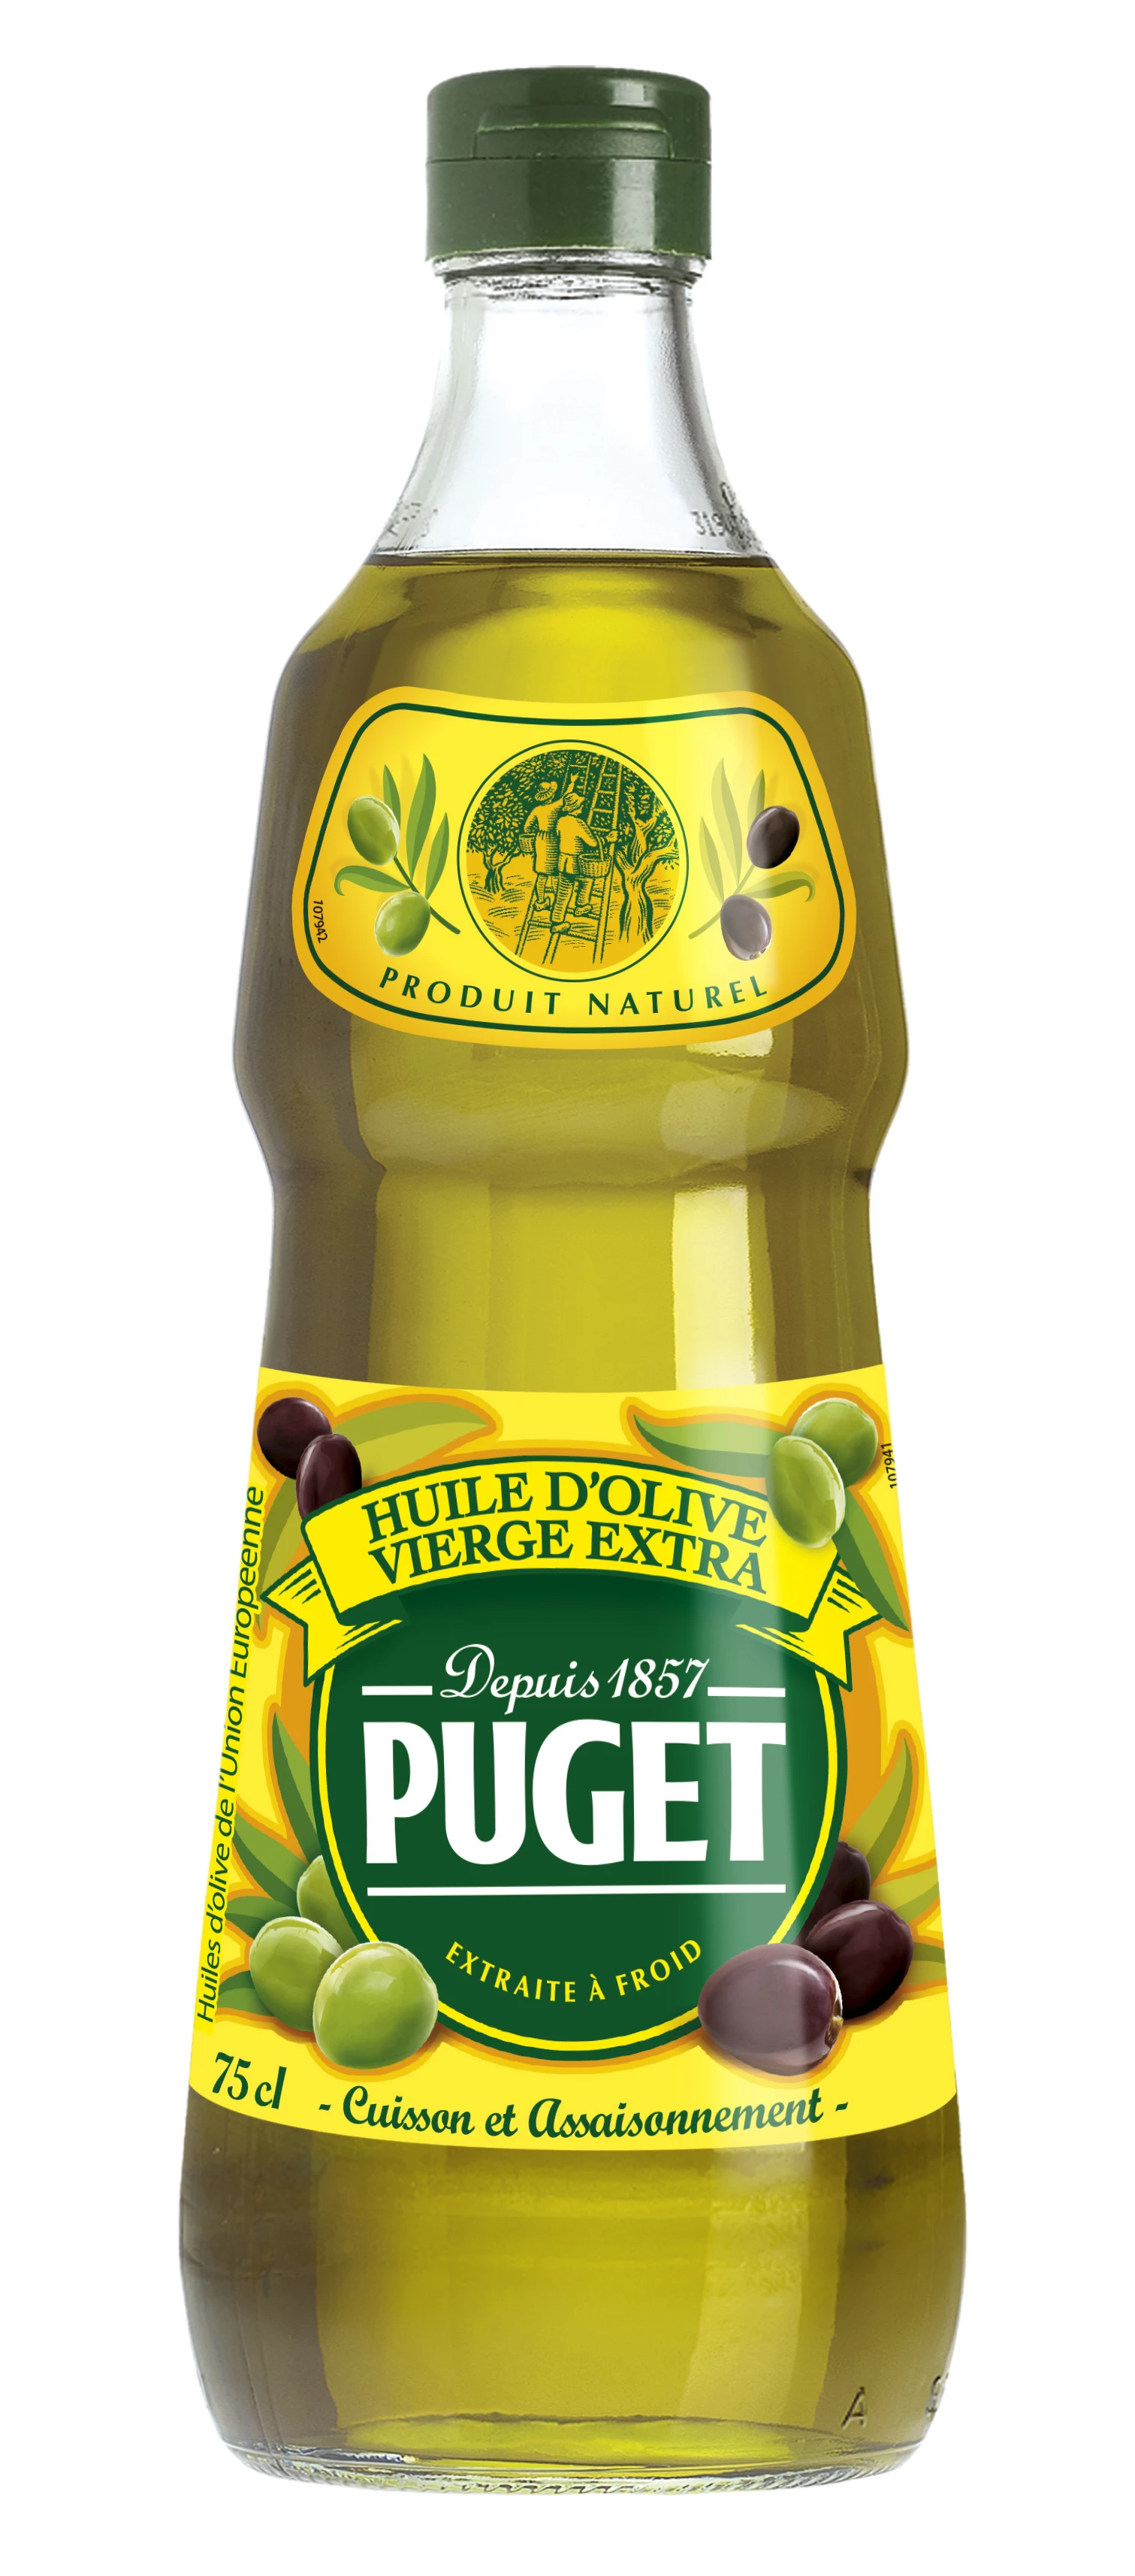 Huile Olive, 75cl - PUGET